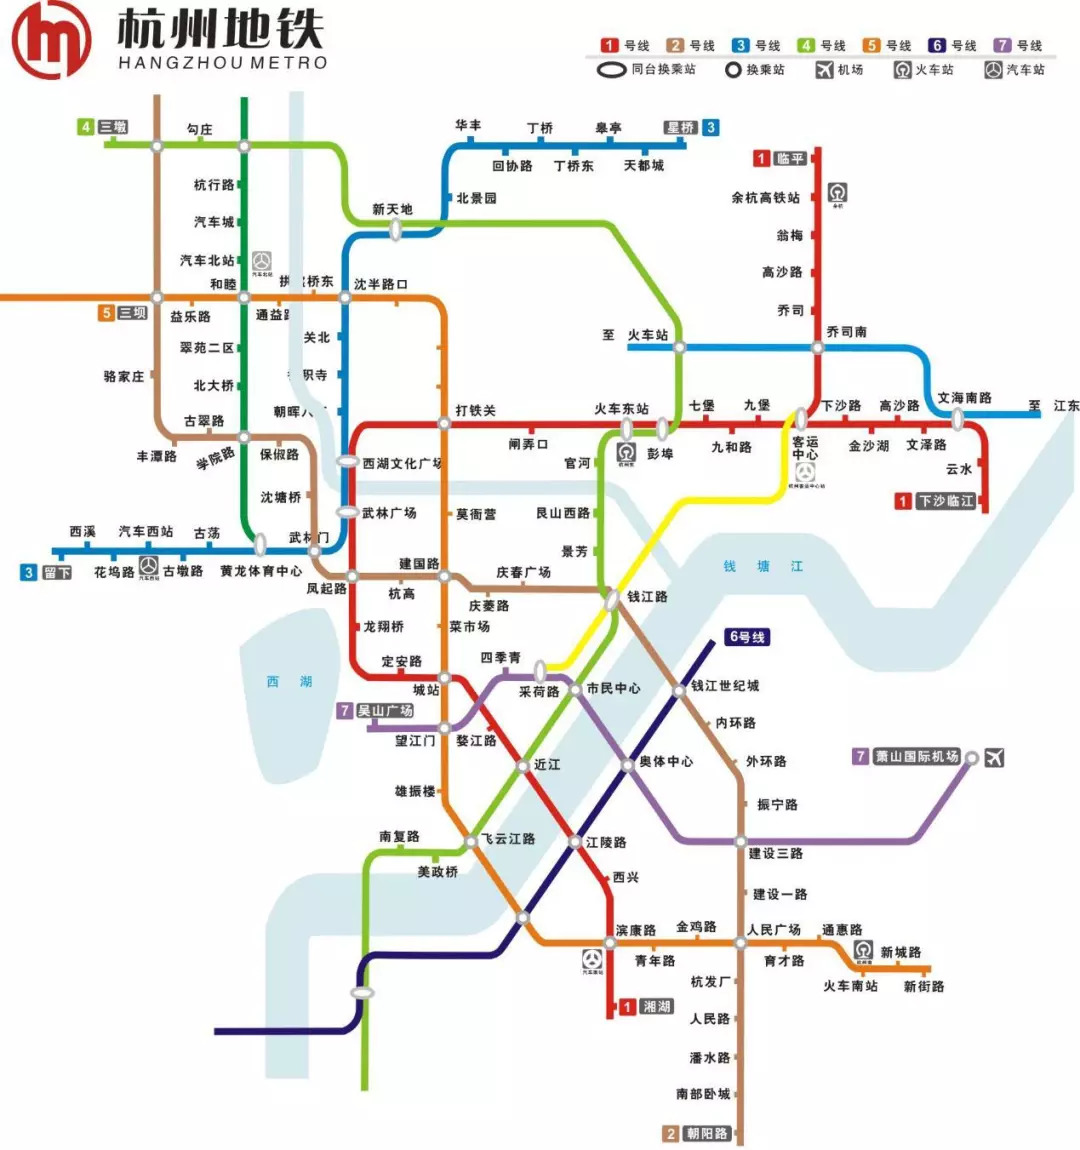 截至2018年1月,杭州地铁运营线路共3条 1号线,2号线,4号线 平均每天有